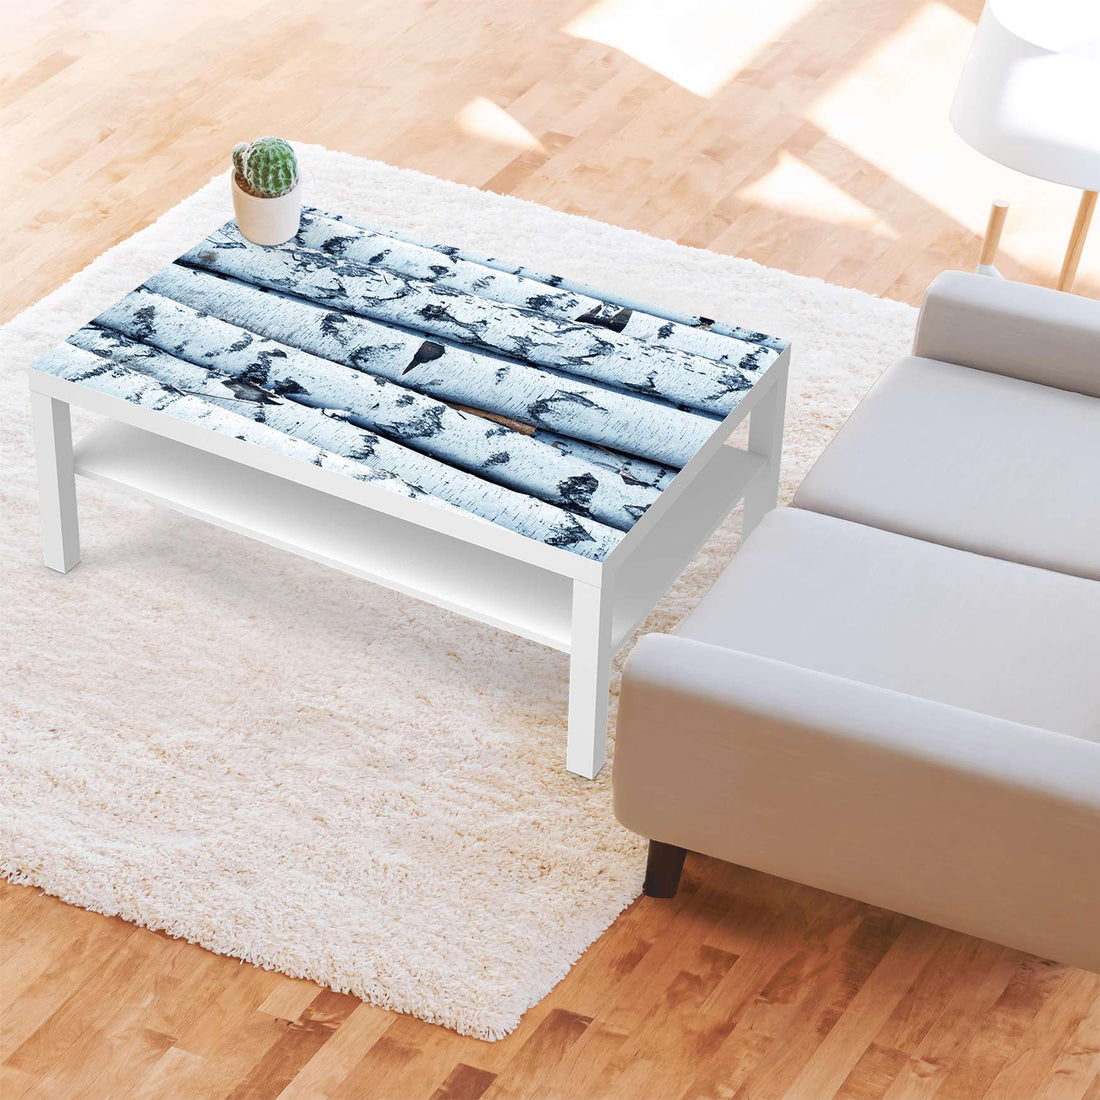 Klebefolie Weisses Buschwerk - IKEA Lack Tisch 118x78 cm - Wohnzimmer